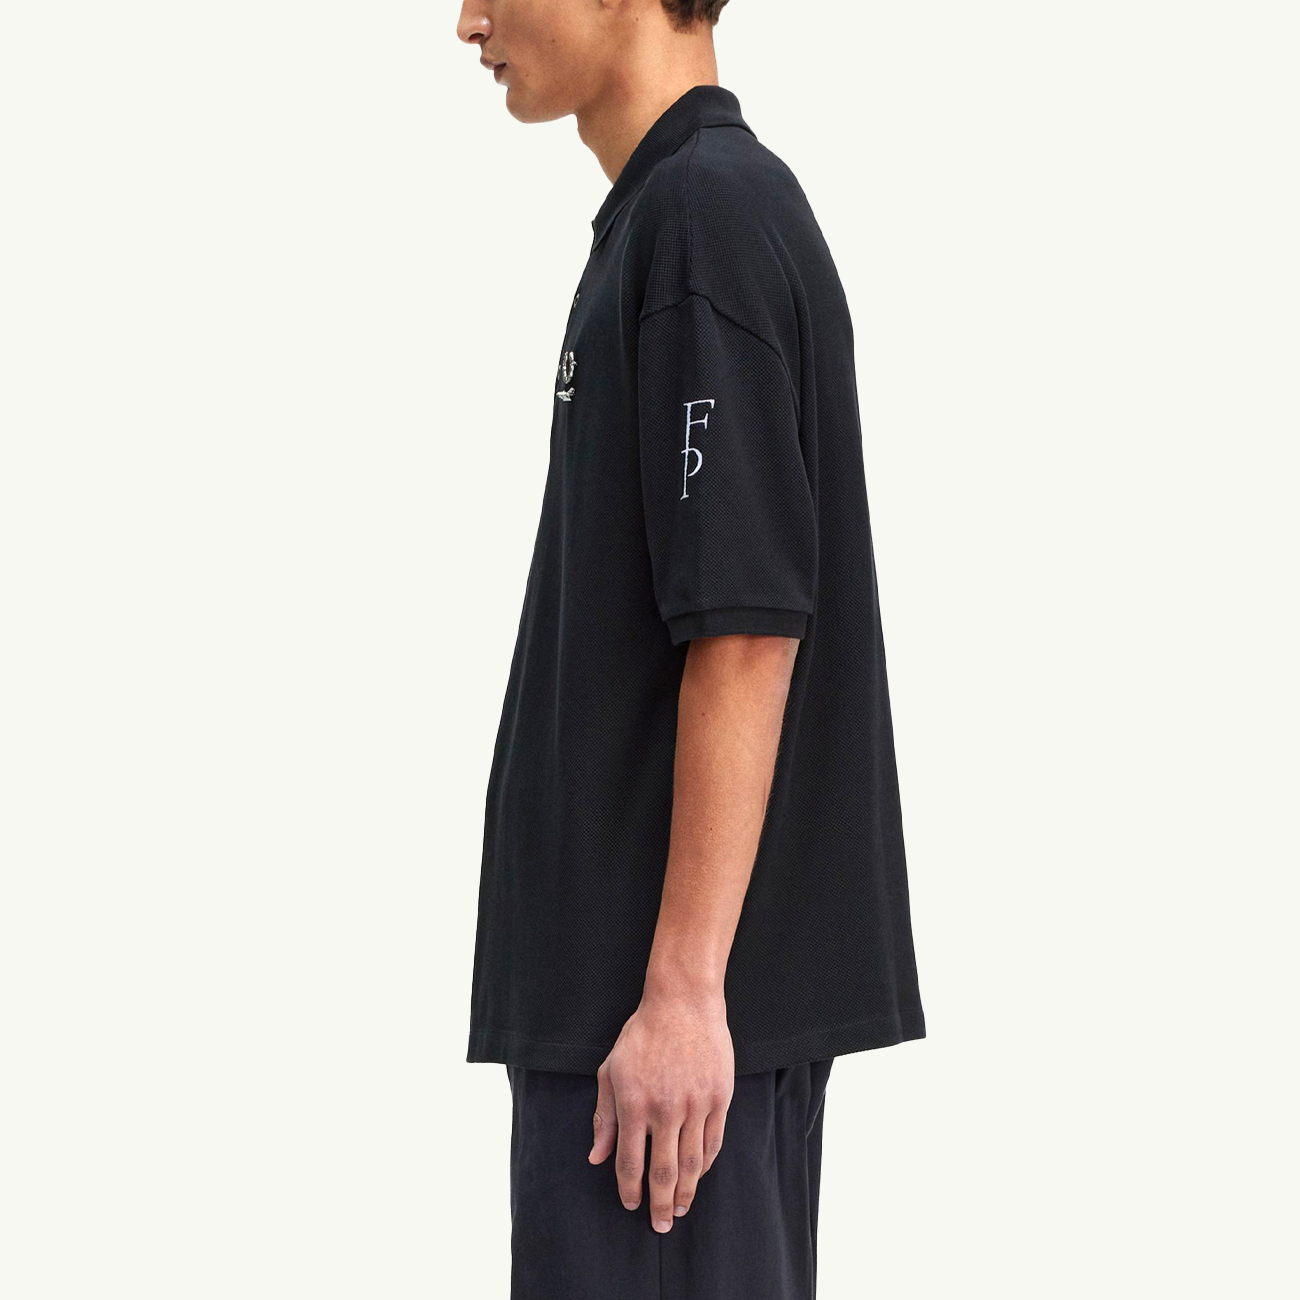 Raf Simons X FP Printed Over Sized Polo Shirt - Black